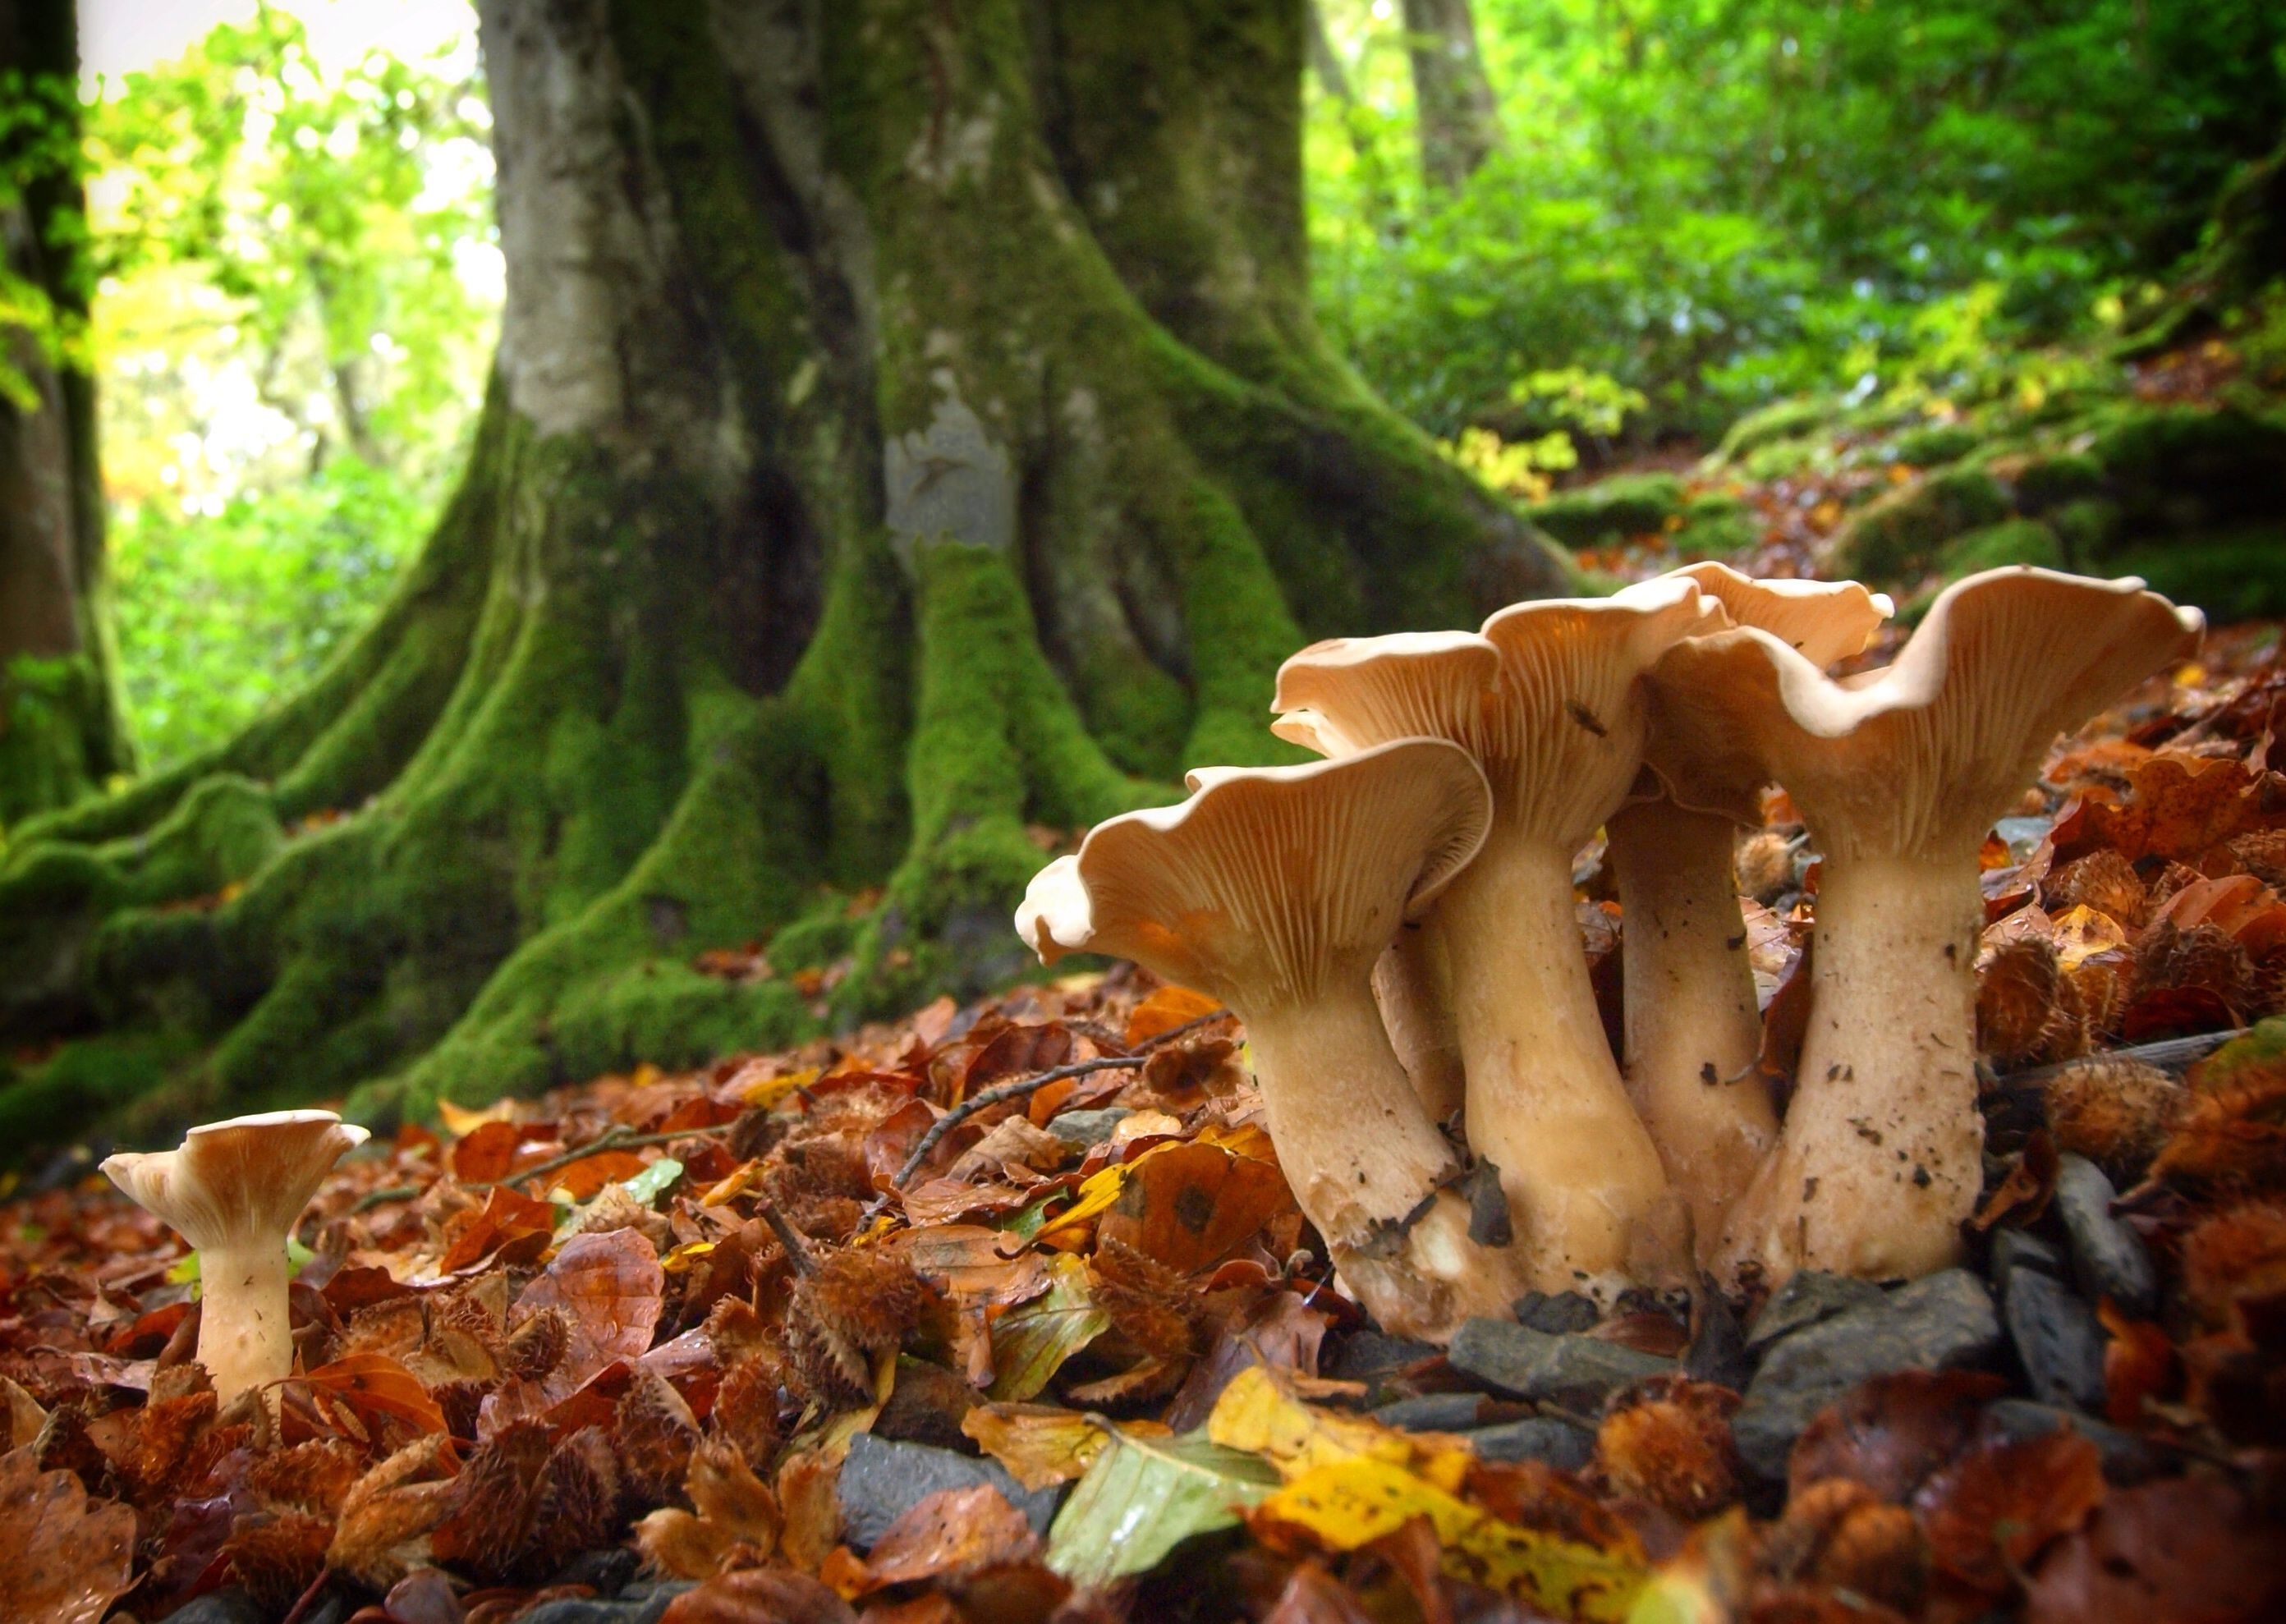 Fungi under beech, Hidden wonders, Nature's companions, Serene forest, 2790x1980 HD Desktop